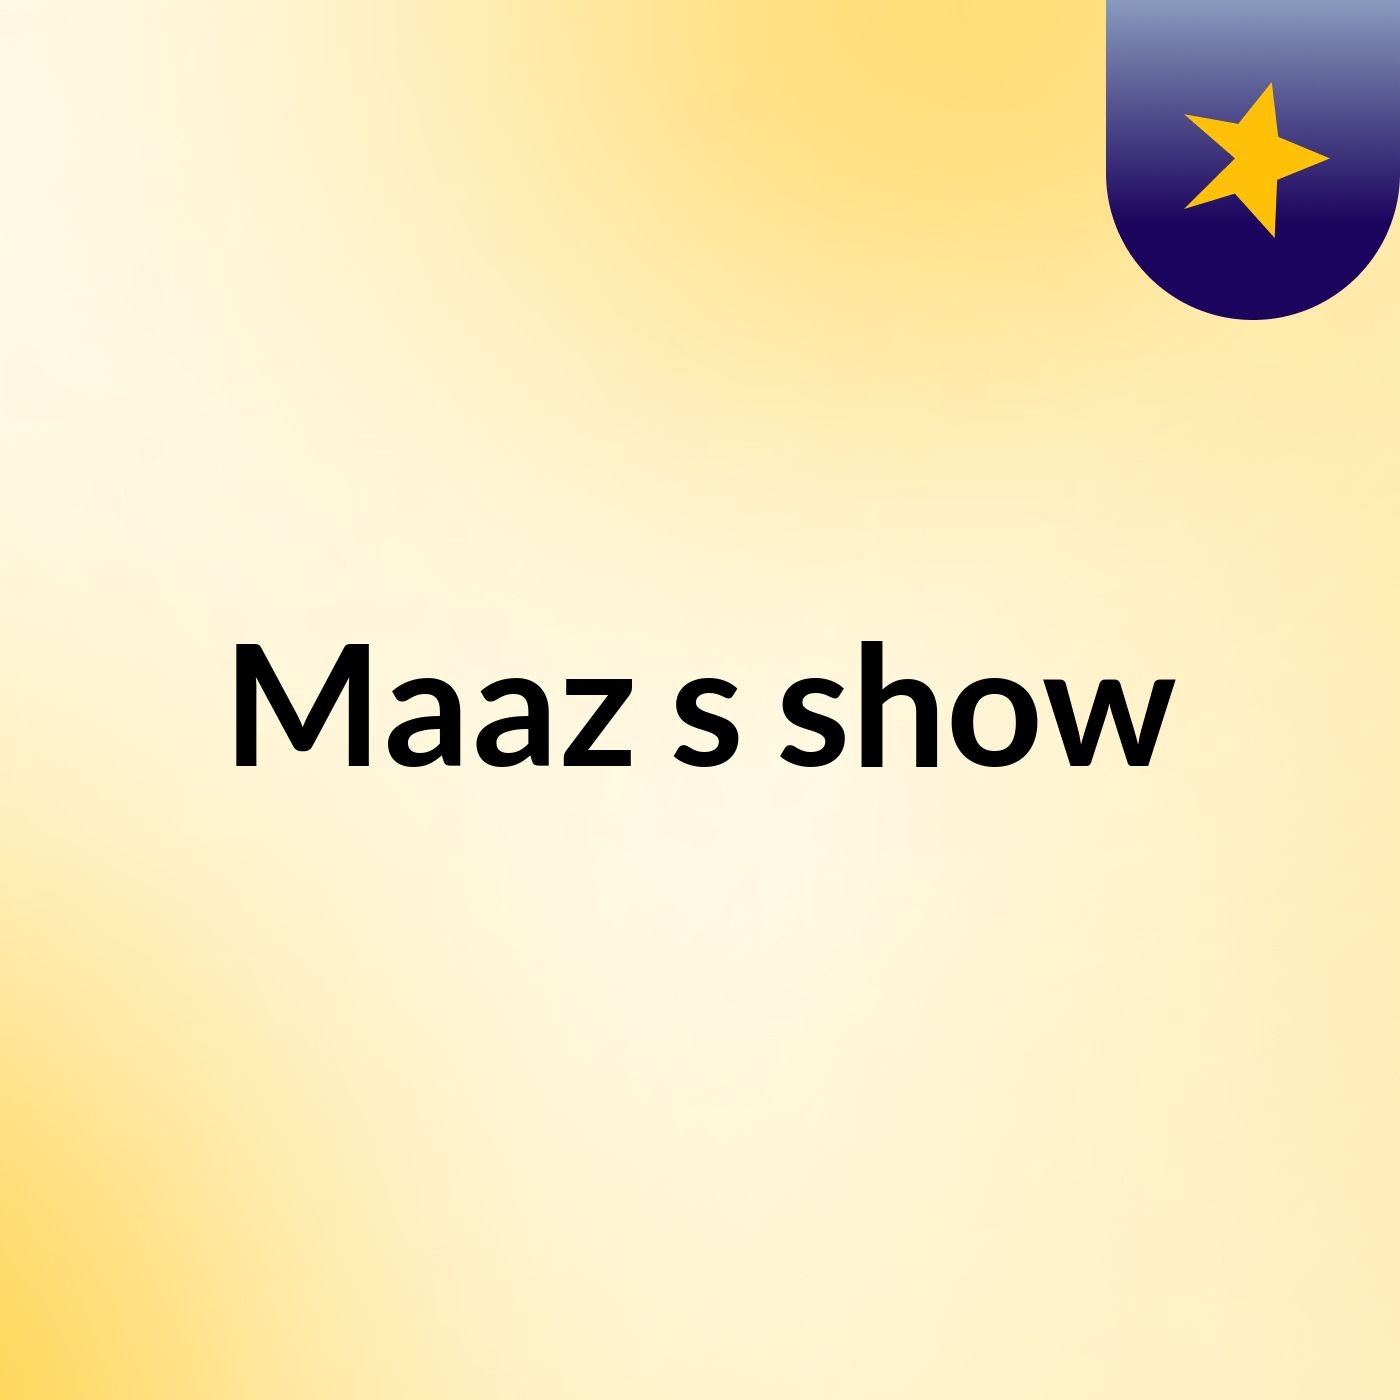 Maaz's show